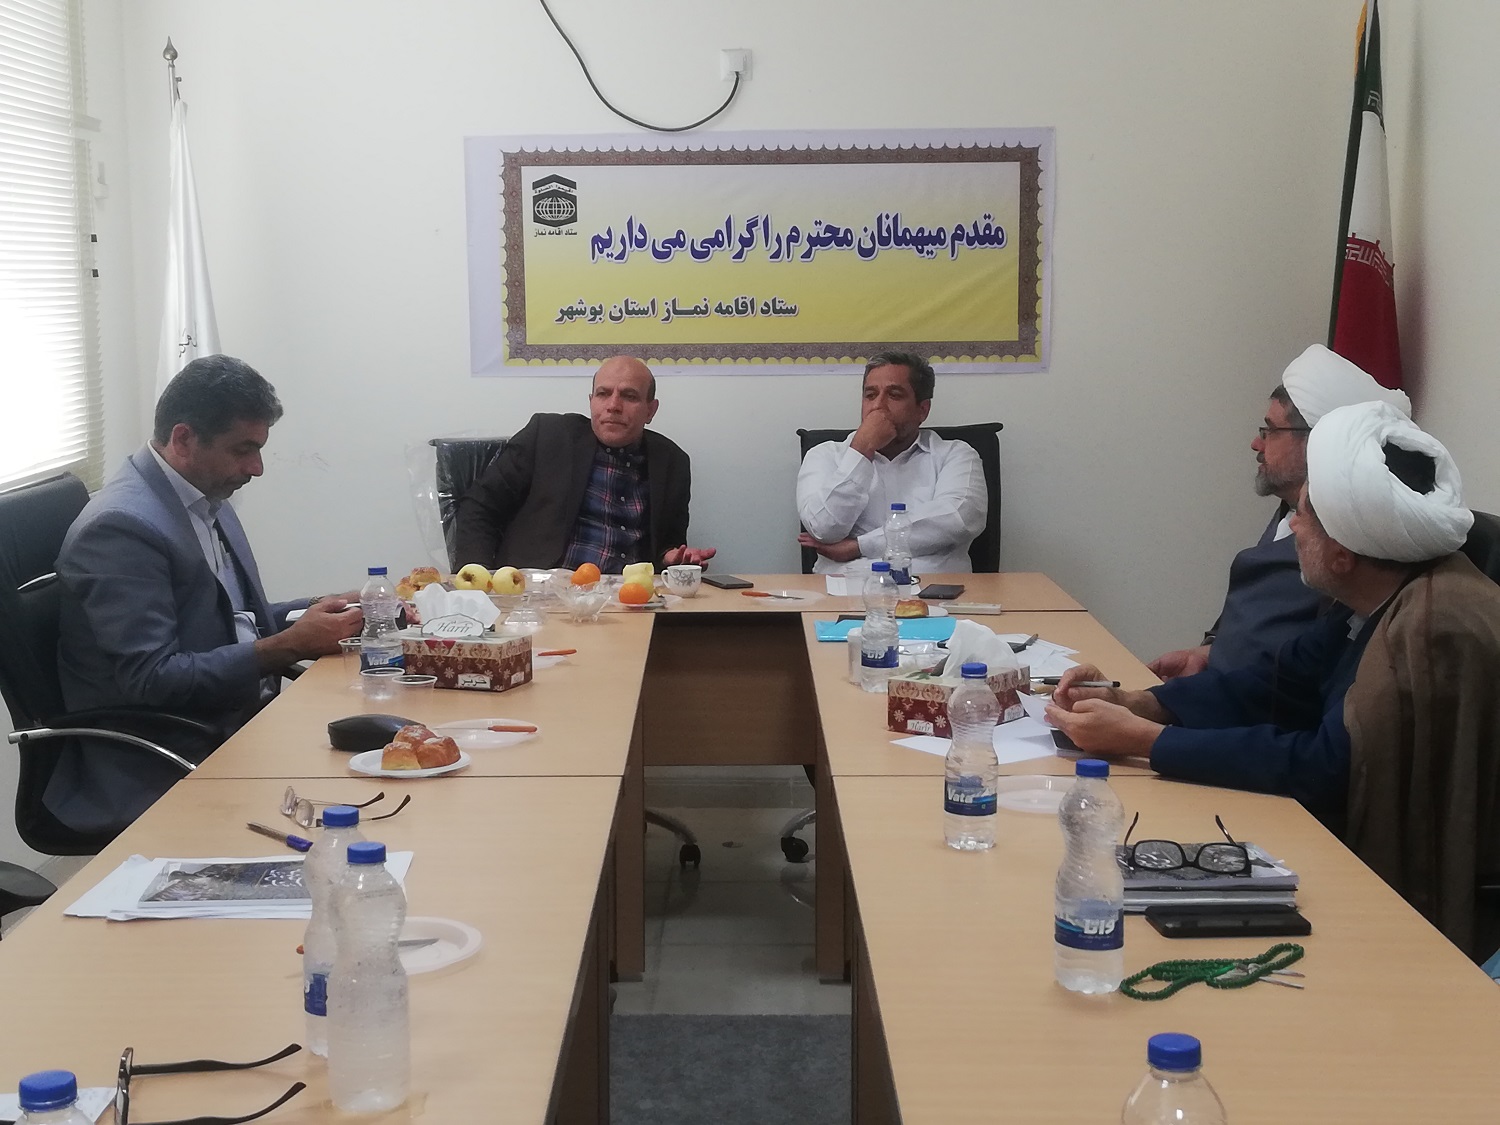 سومین جلسه شورای برنامه ریزی منطقه سه کشوری در استان بوشهر برگزار شد